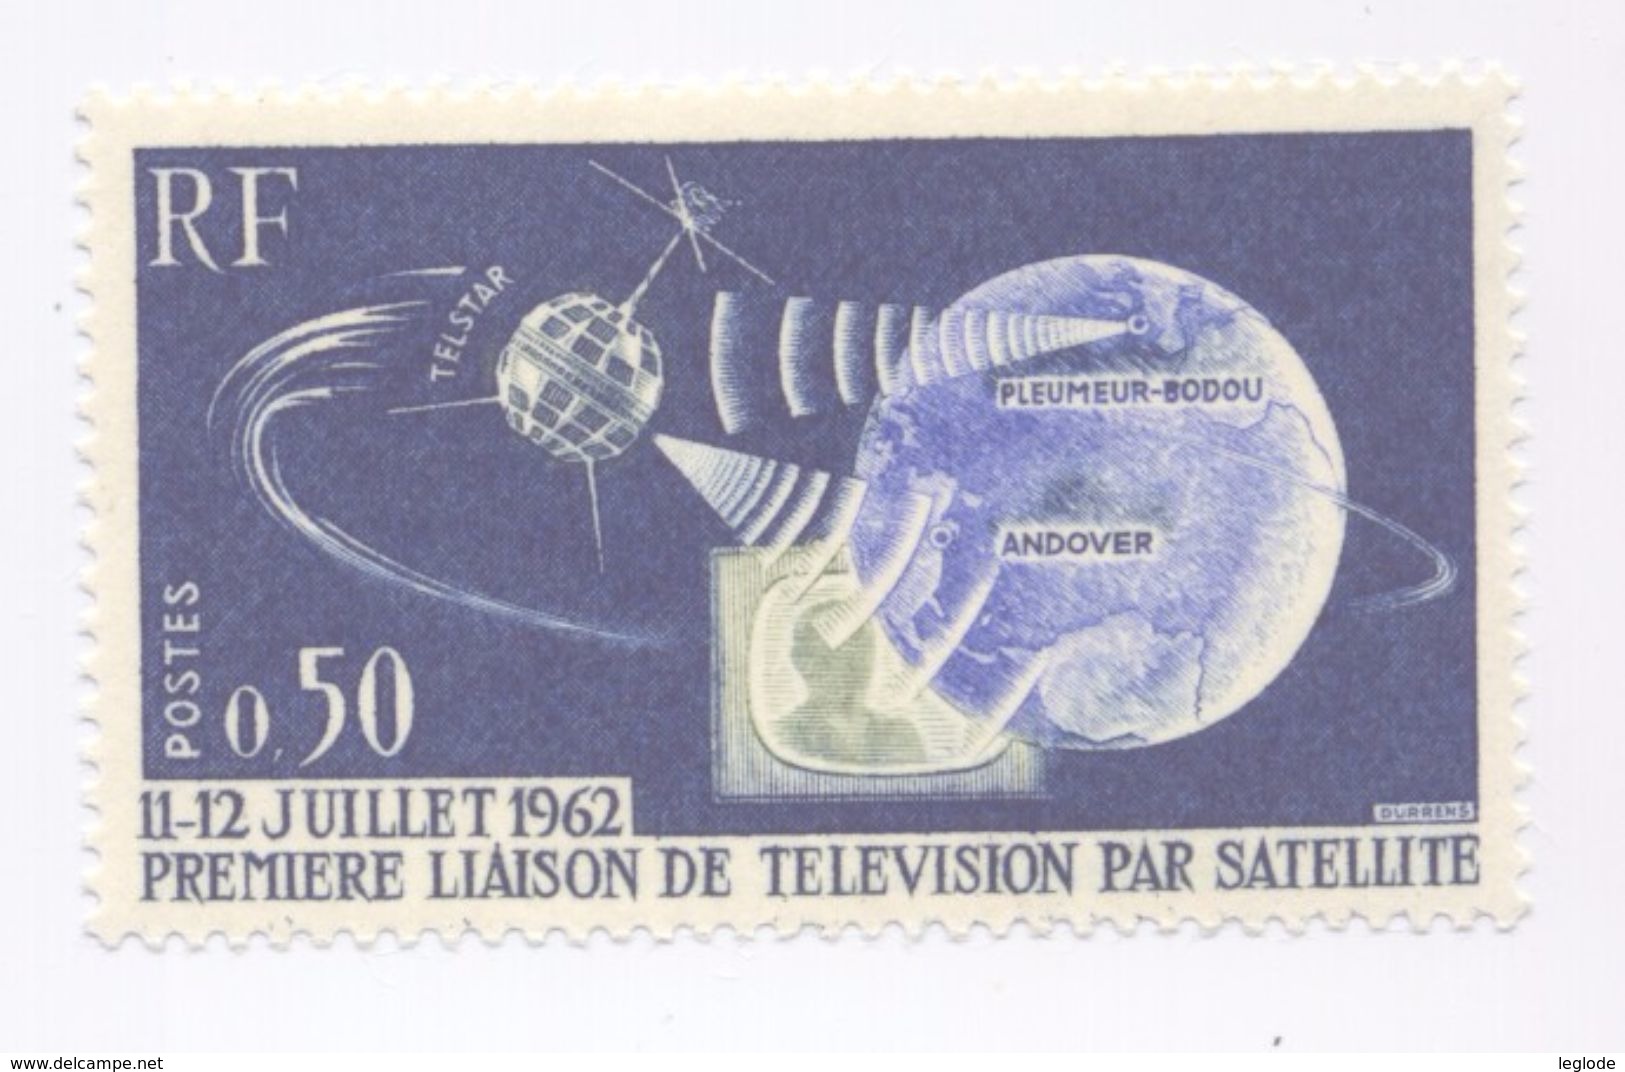 1361 - 1ère Liaison De Télévision Par Satellite (11-12 Juillet 1962 (1962-1963) - Ungebraucht